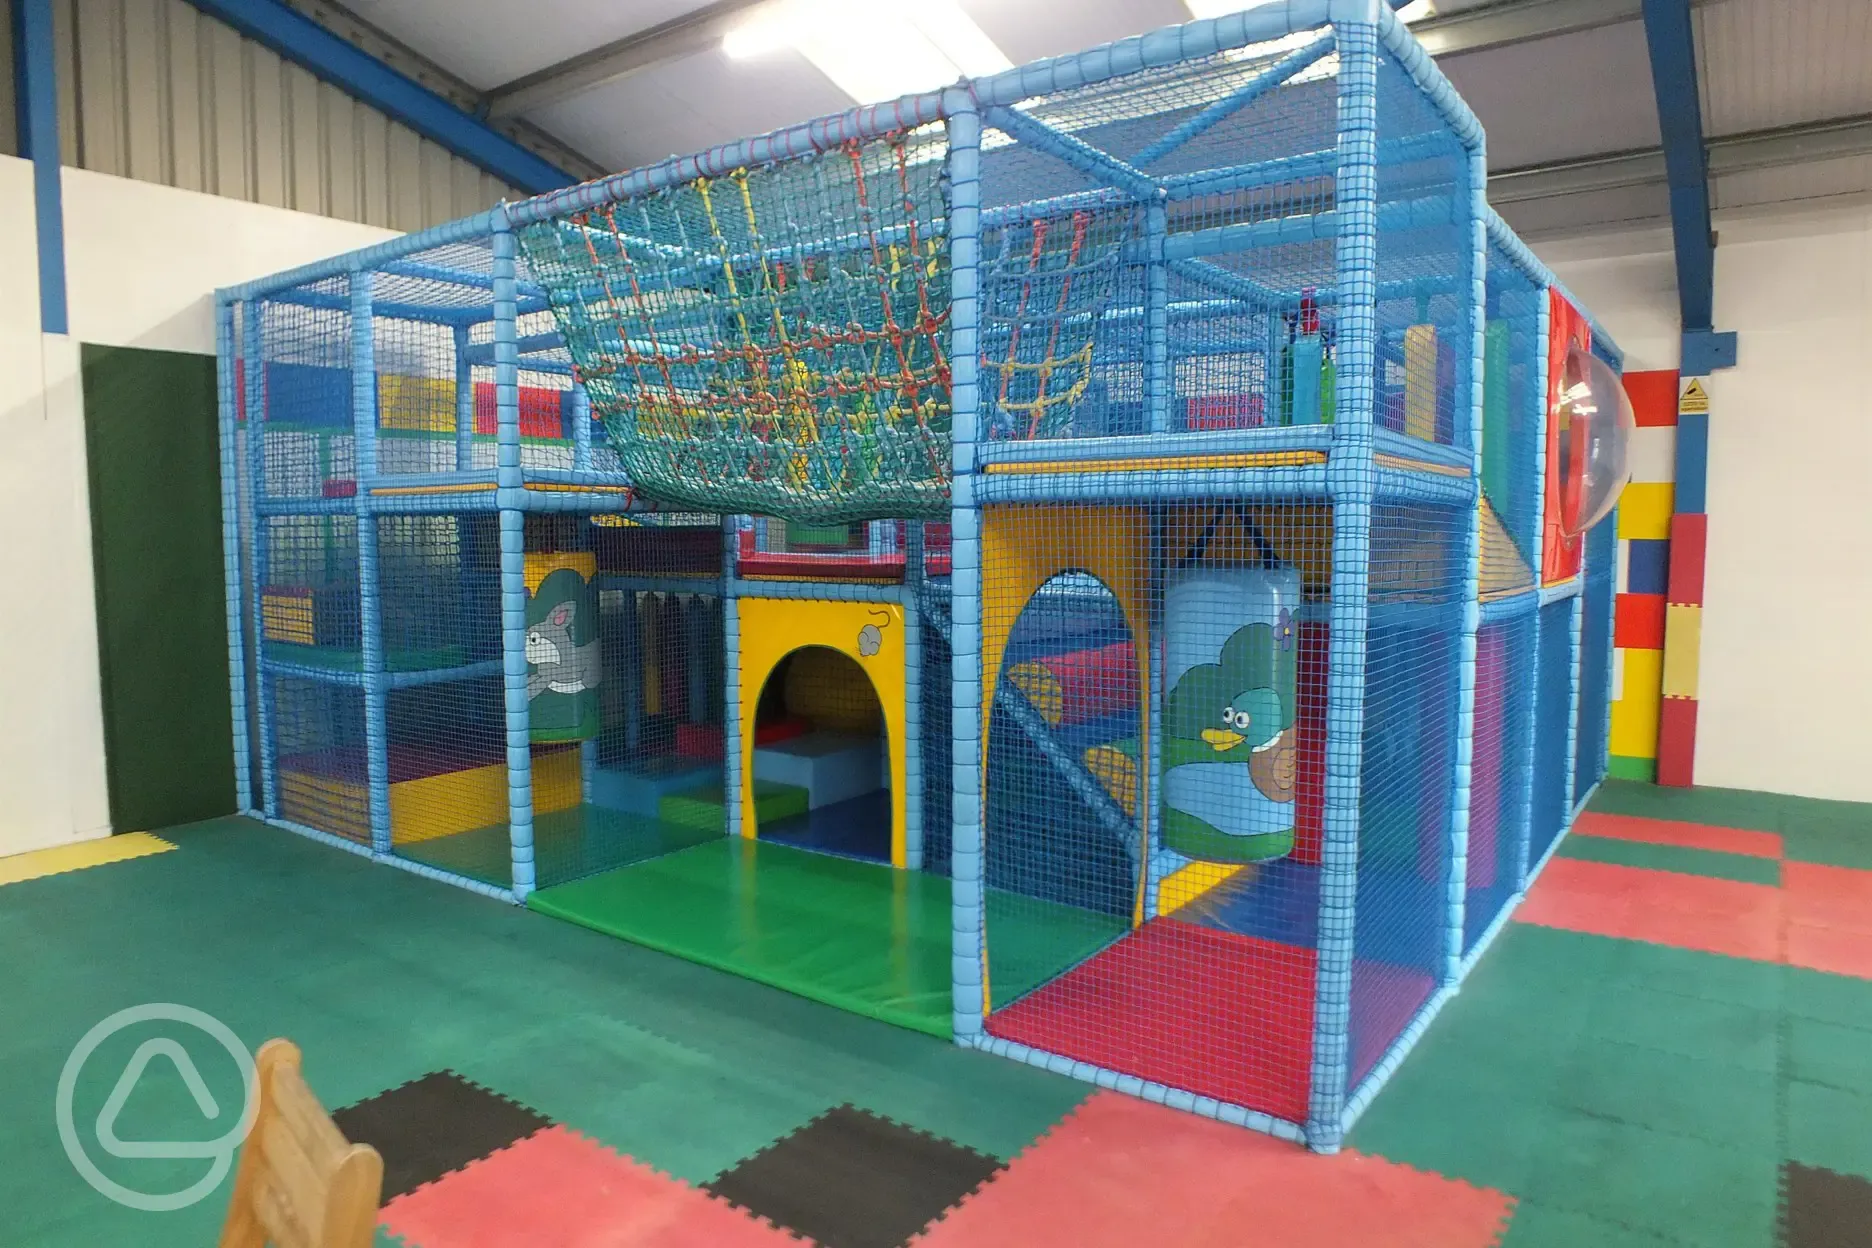 Children's indoor play area